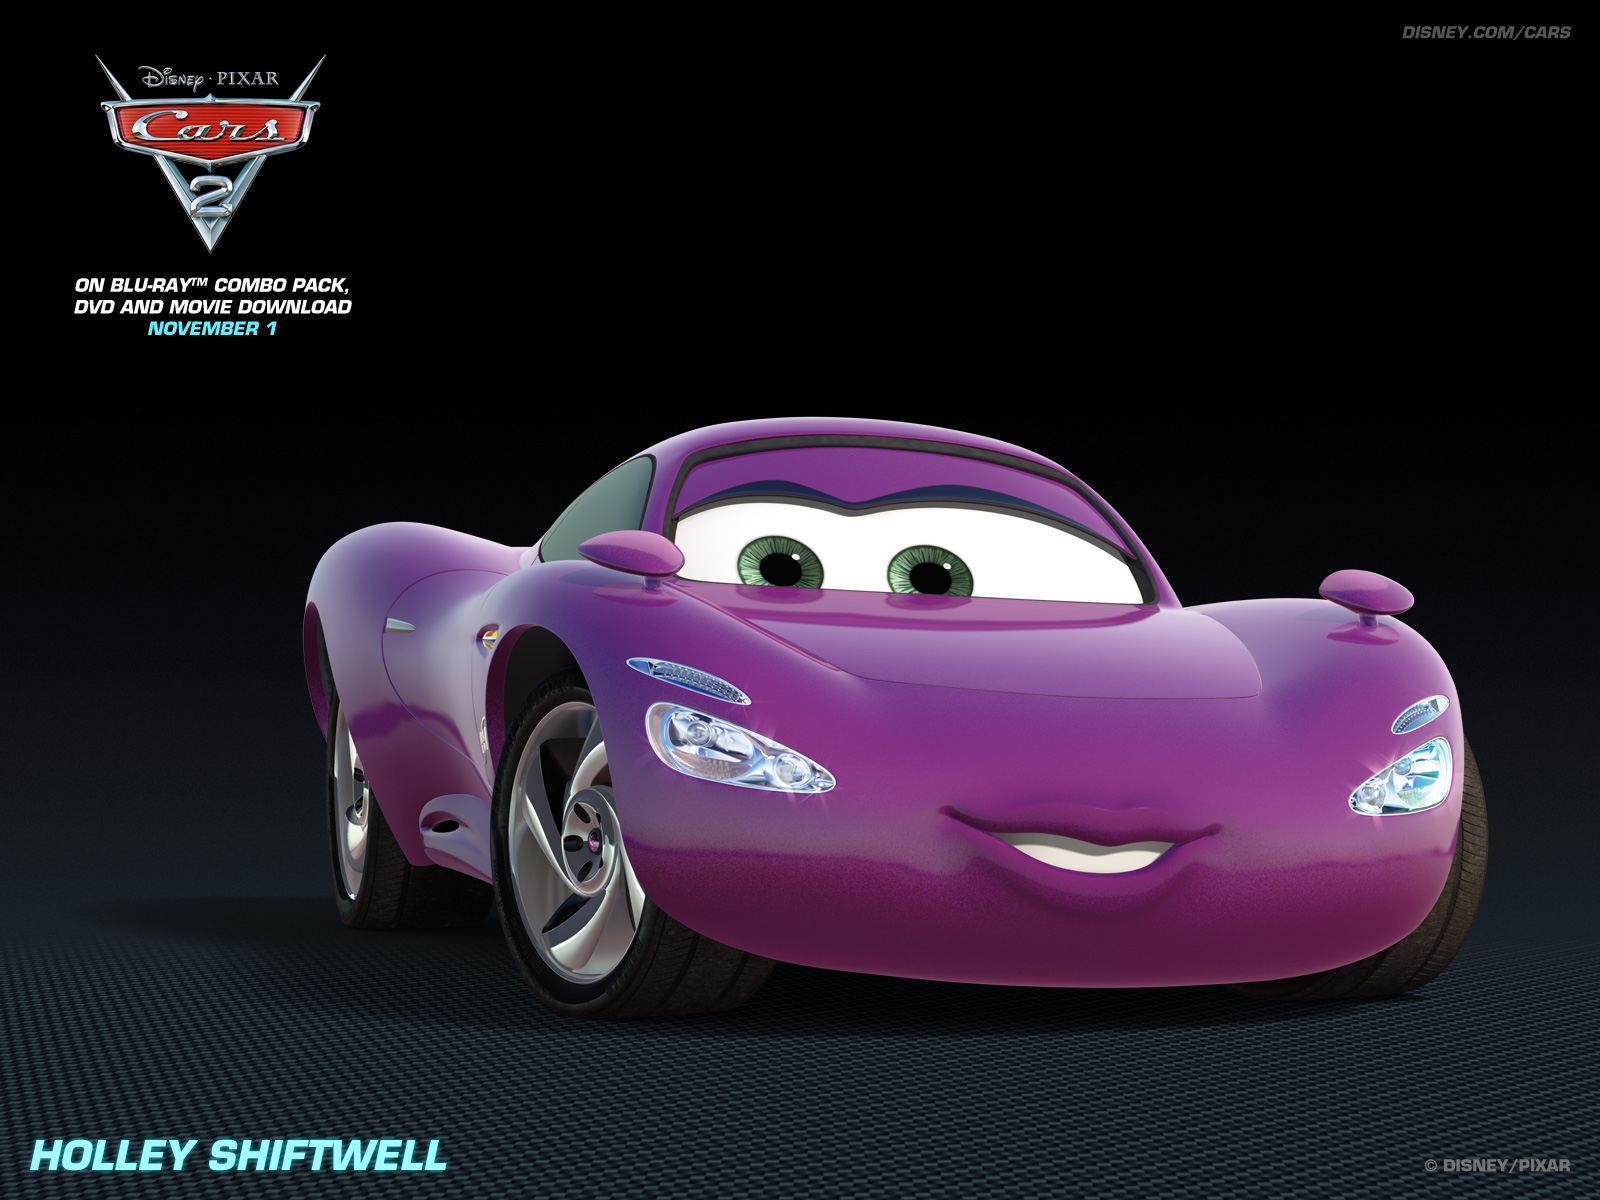 Disney Cars 2 Wallpapers Disney pixar cars 2